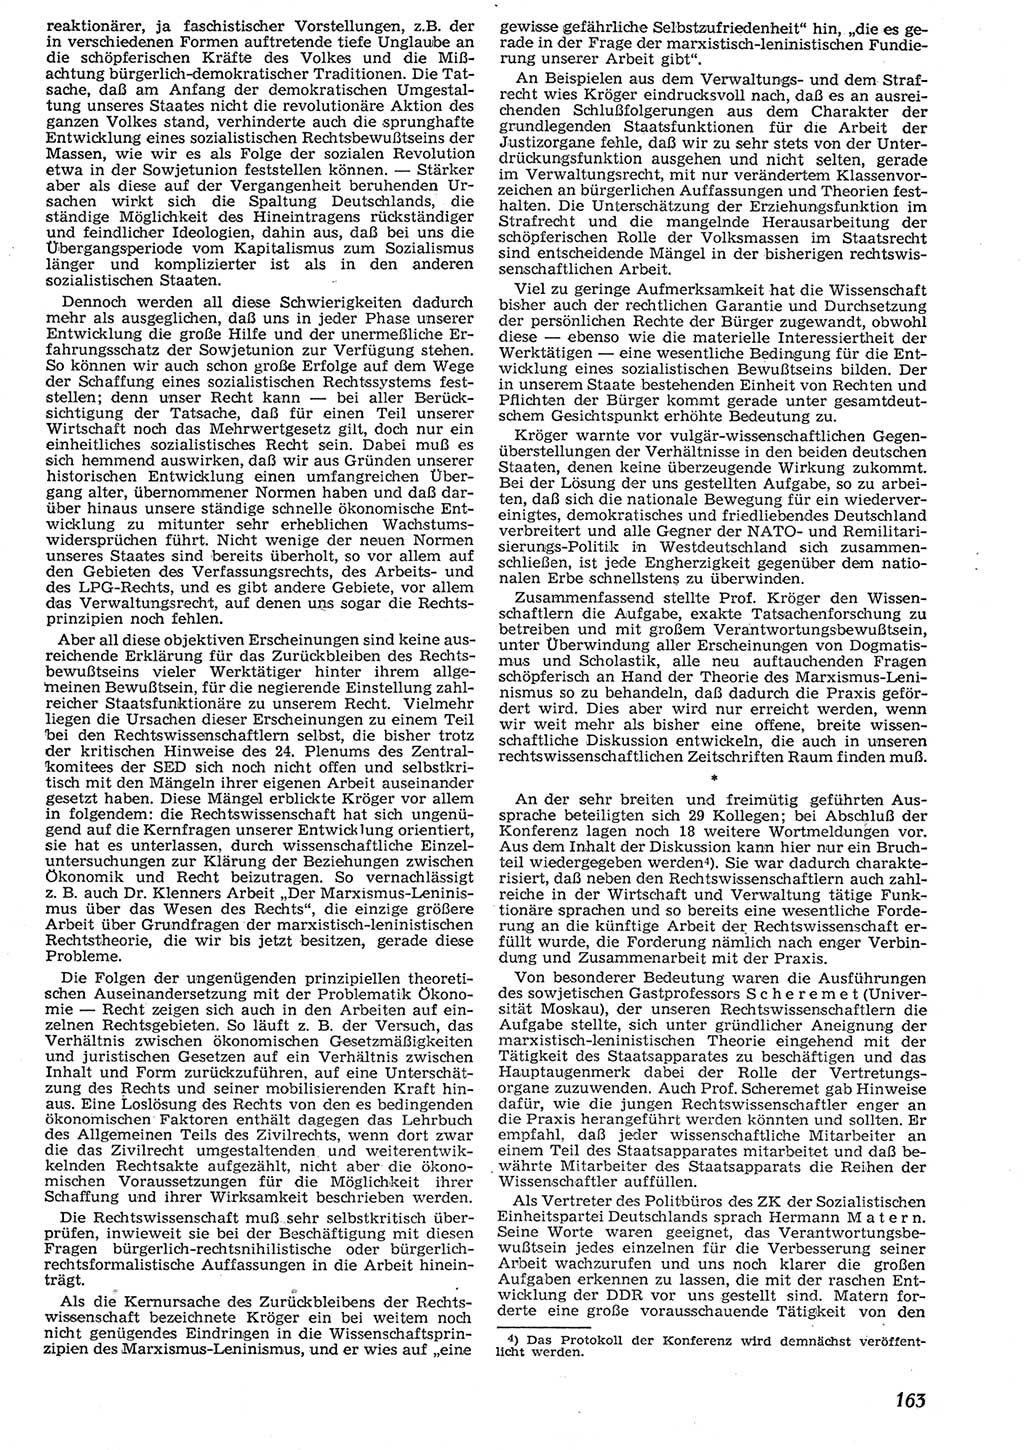 Neue Justiz (NJ), Zeitschrift für Recht und Rechtswissenschaft [Deutsche Demokratische Republik (DDR)], 10. Jahrgang 1956, Seite 163 (NJ DDR 1956, S. 163)